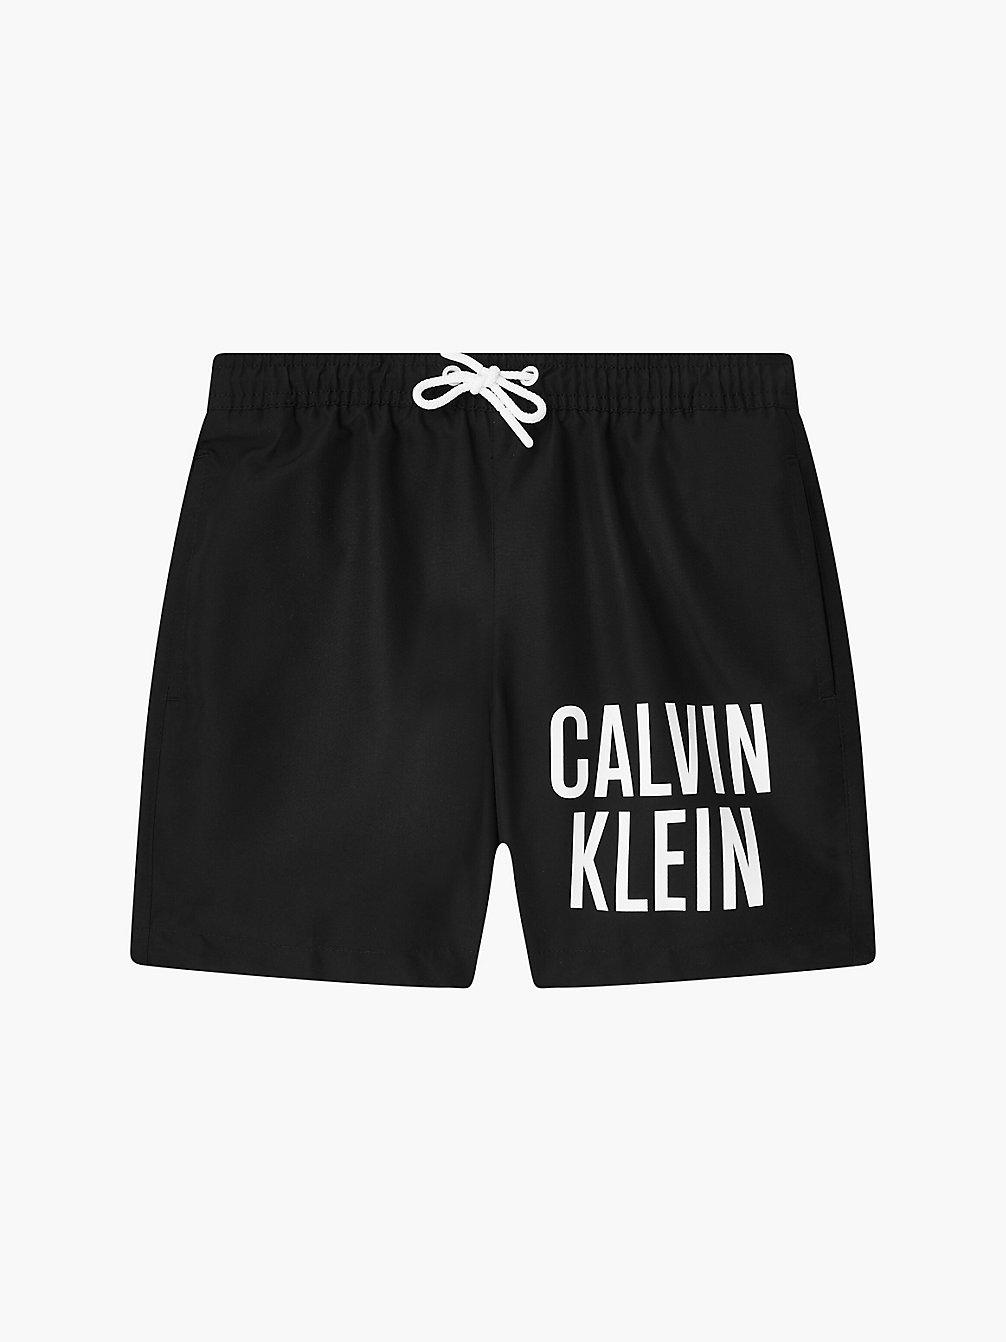 PVH BLACK > Jongenszwemshorts - Intense Power > undefined jongens - Calvin Klein